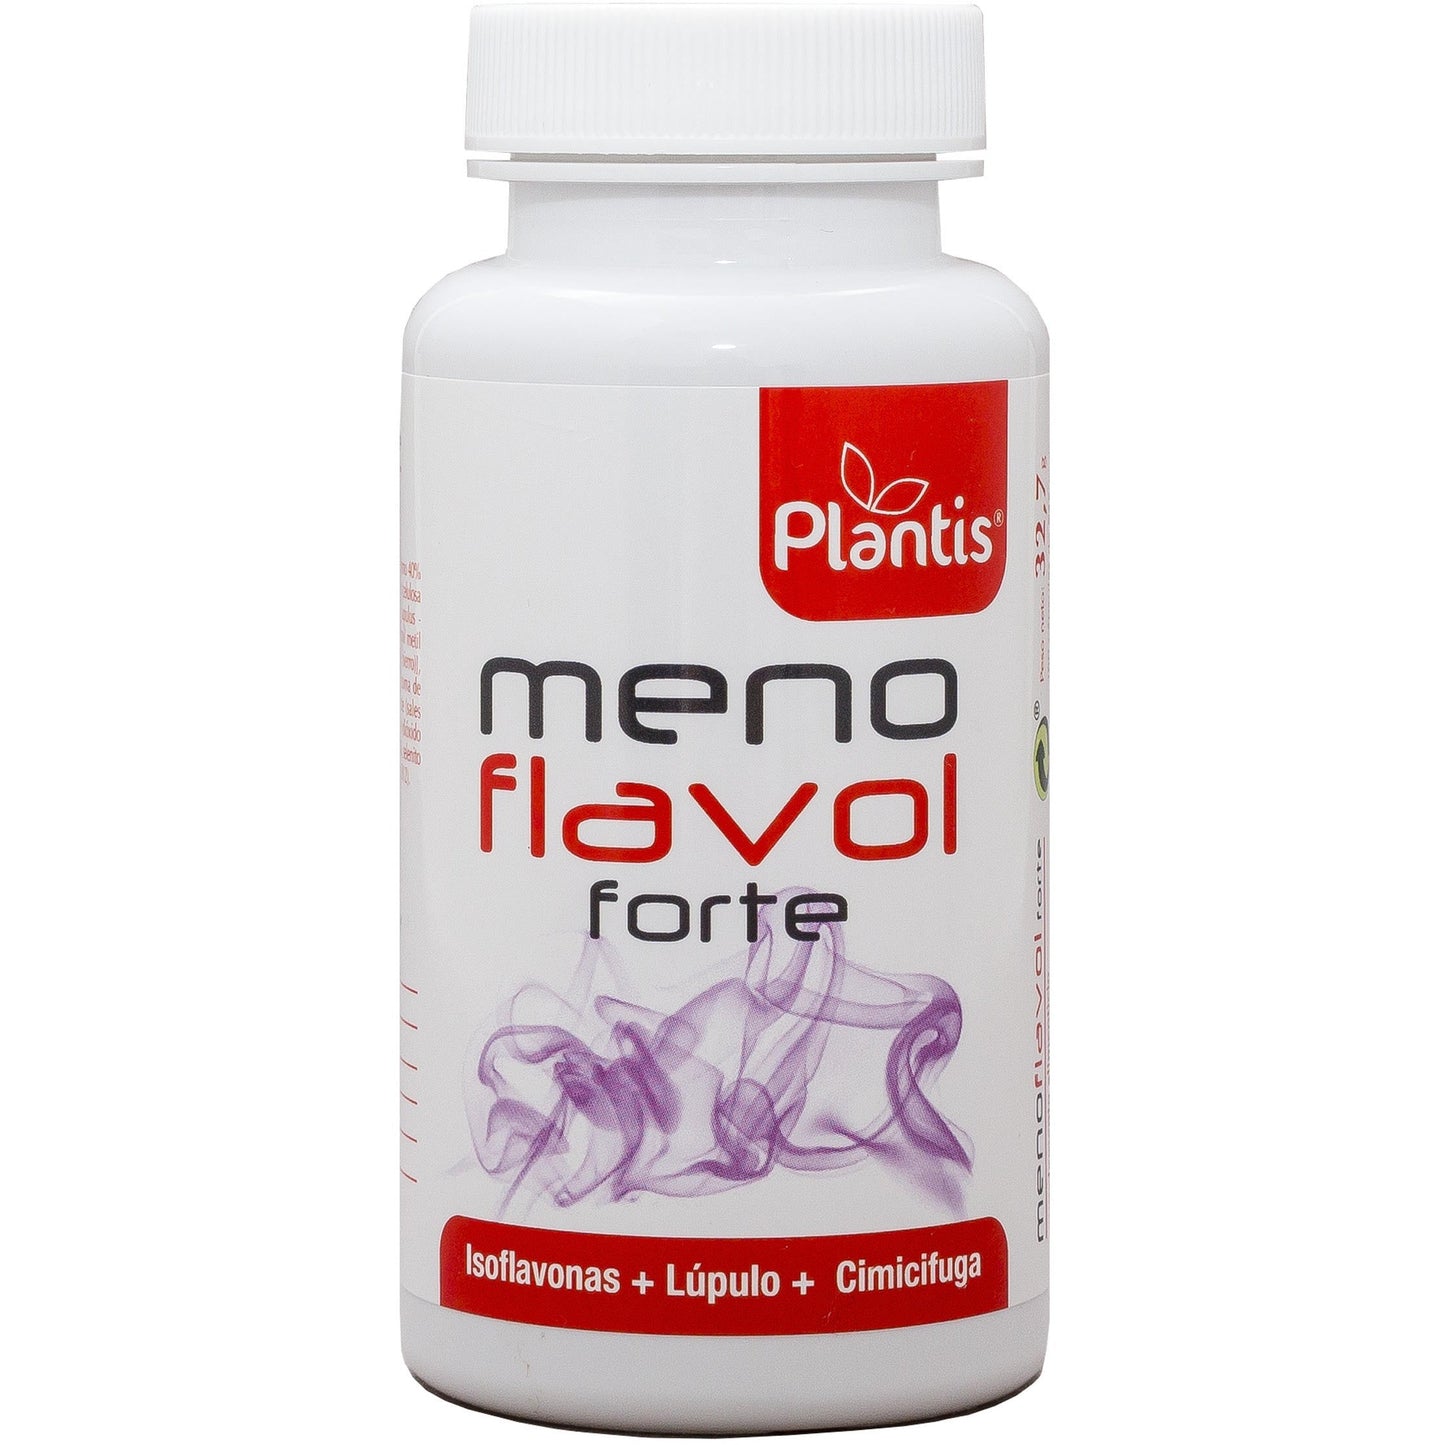 Menoflavol Forte 60 Capsulas | Artesania Agricola - Dietetica Ferrer